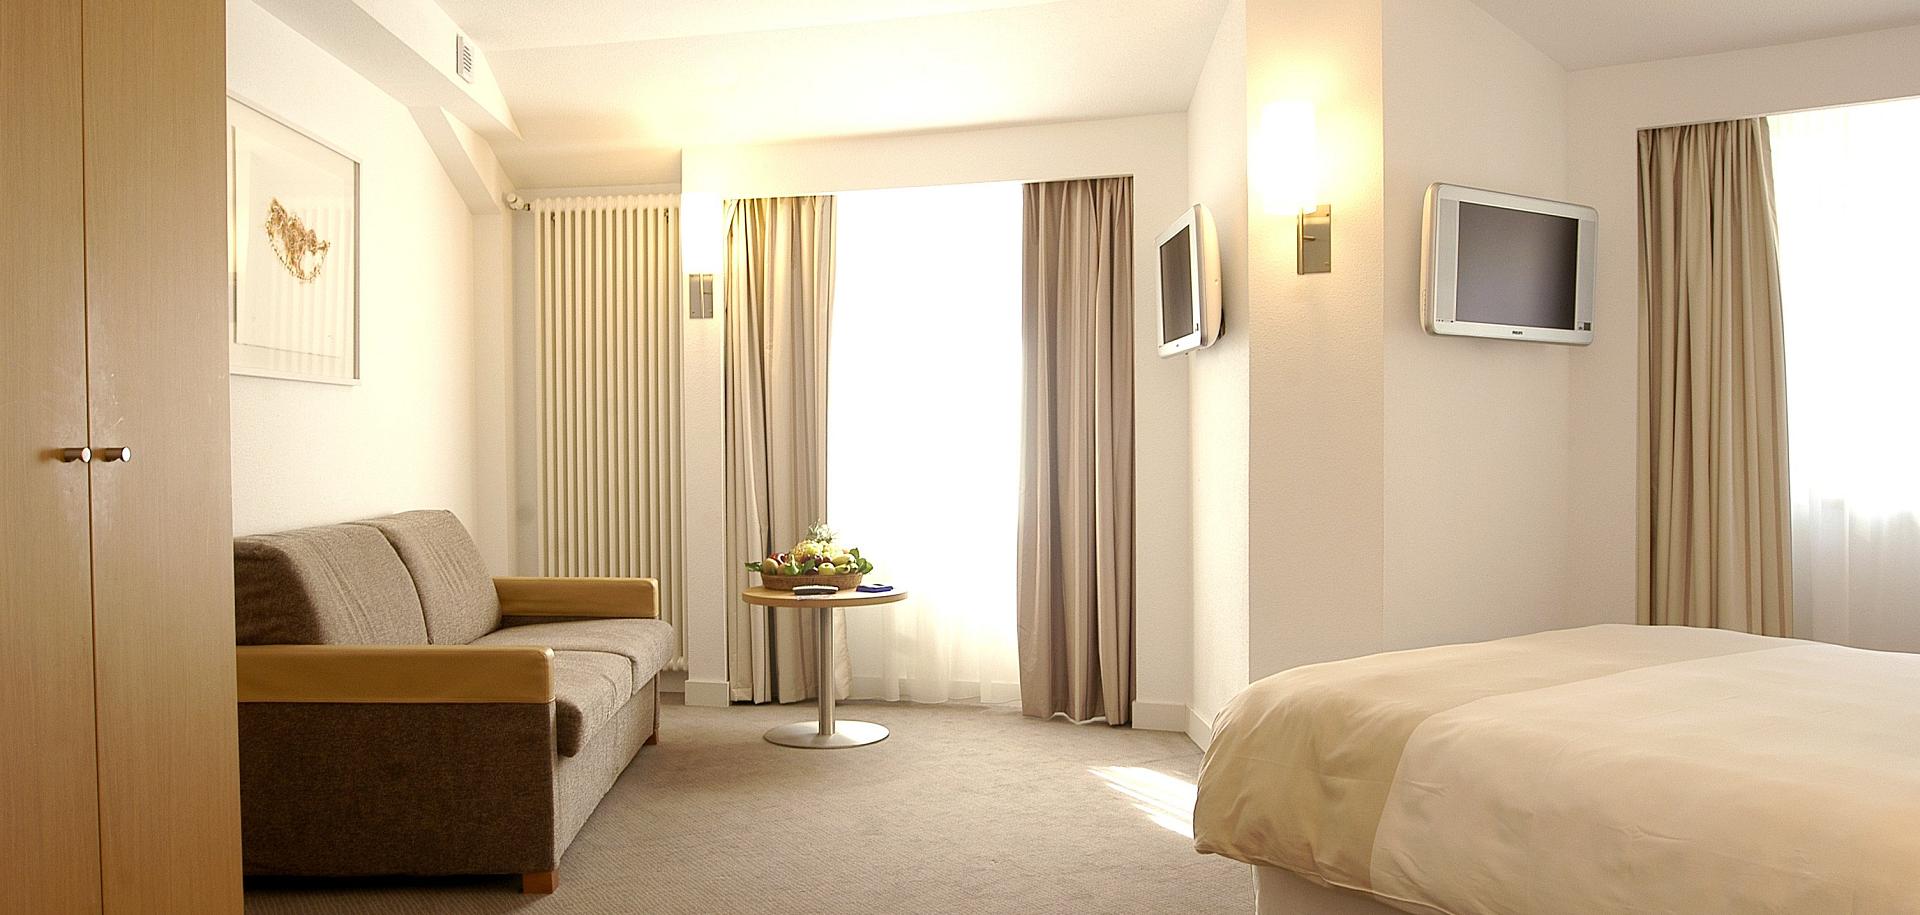 Room Prestigi Hotels Andorra